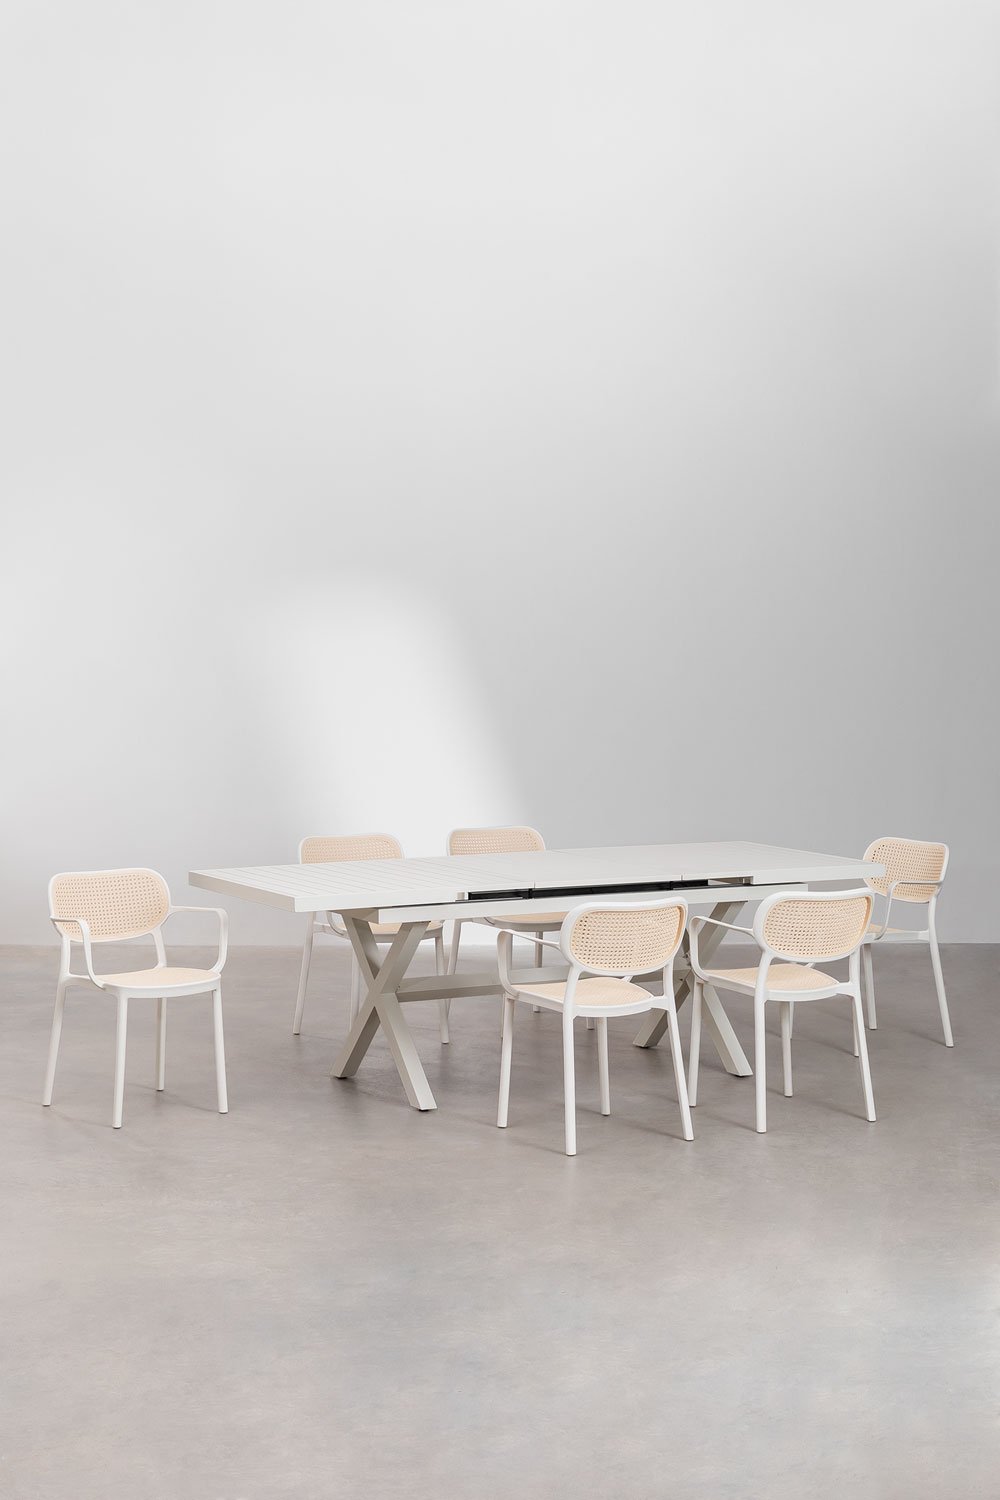 Ensemble table de jardin extensible en aluminium (180-240x90 cm) Karena et 6 chaises de jardin avec accoudoirs Omara  , image de la galerie 1